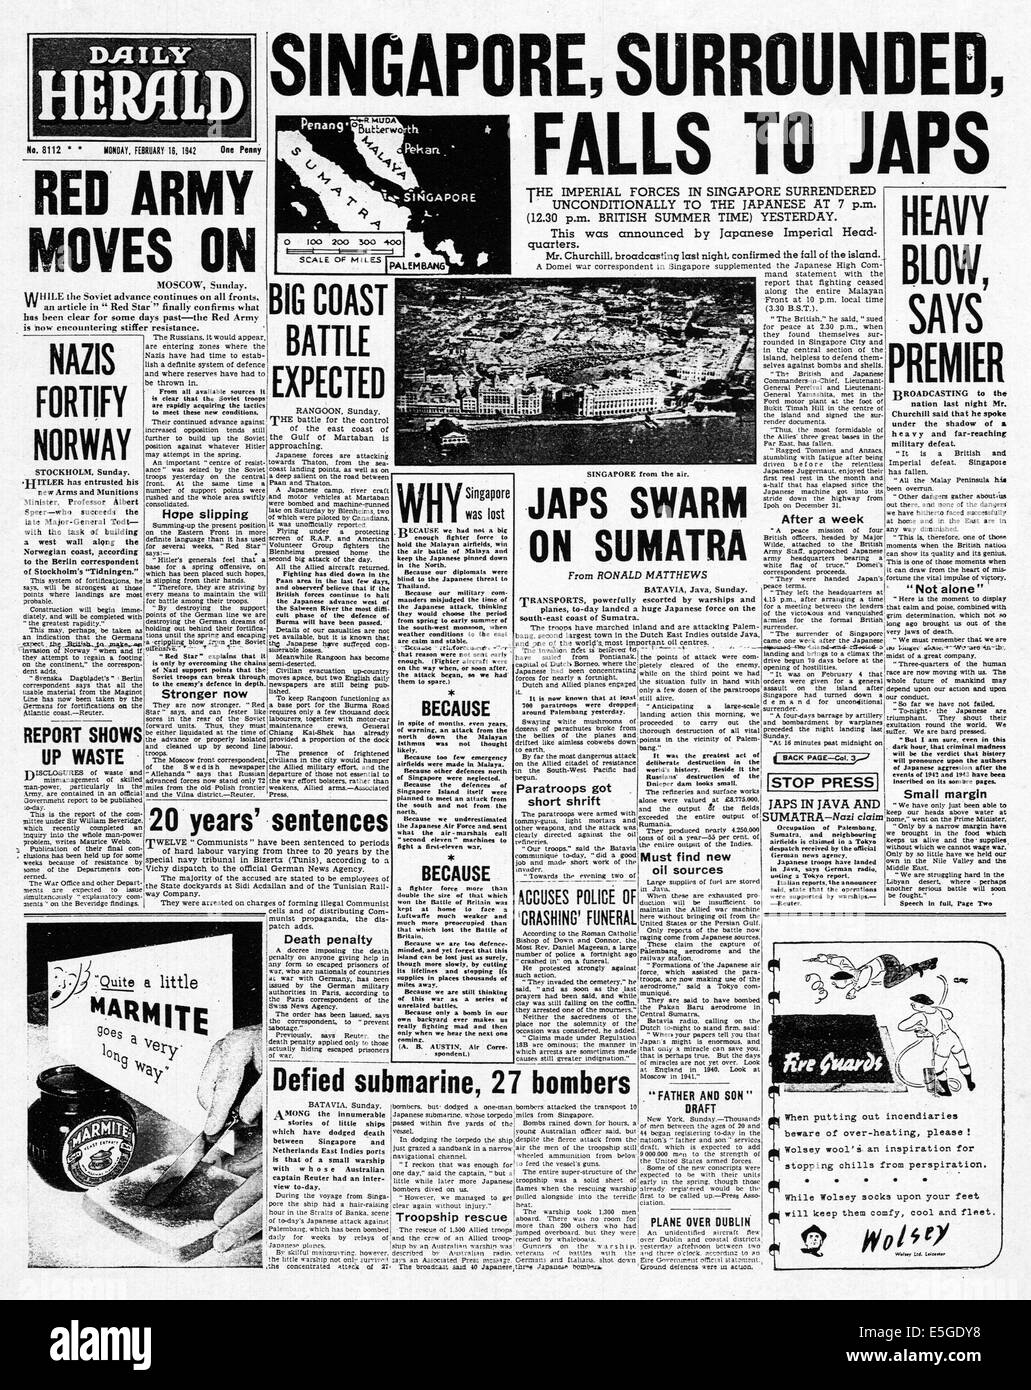 1942 Daily Herald/la page déclaration chute de Singapour pour les forces japonaises Banque D'Images